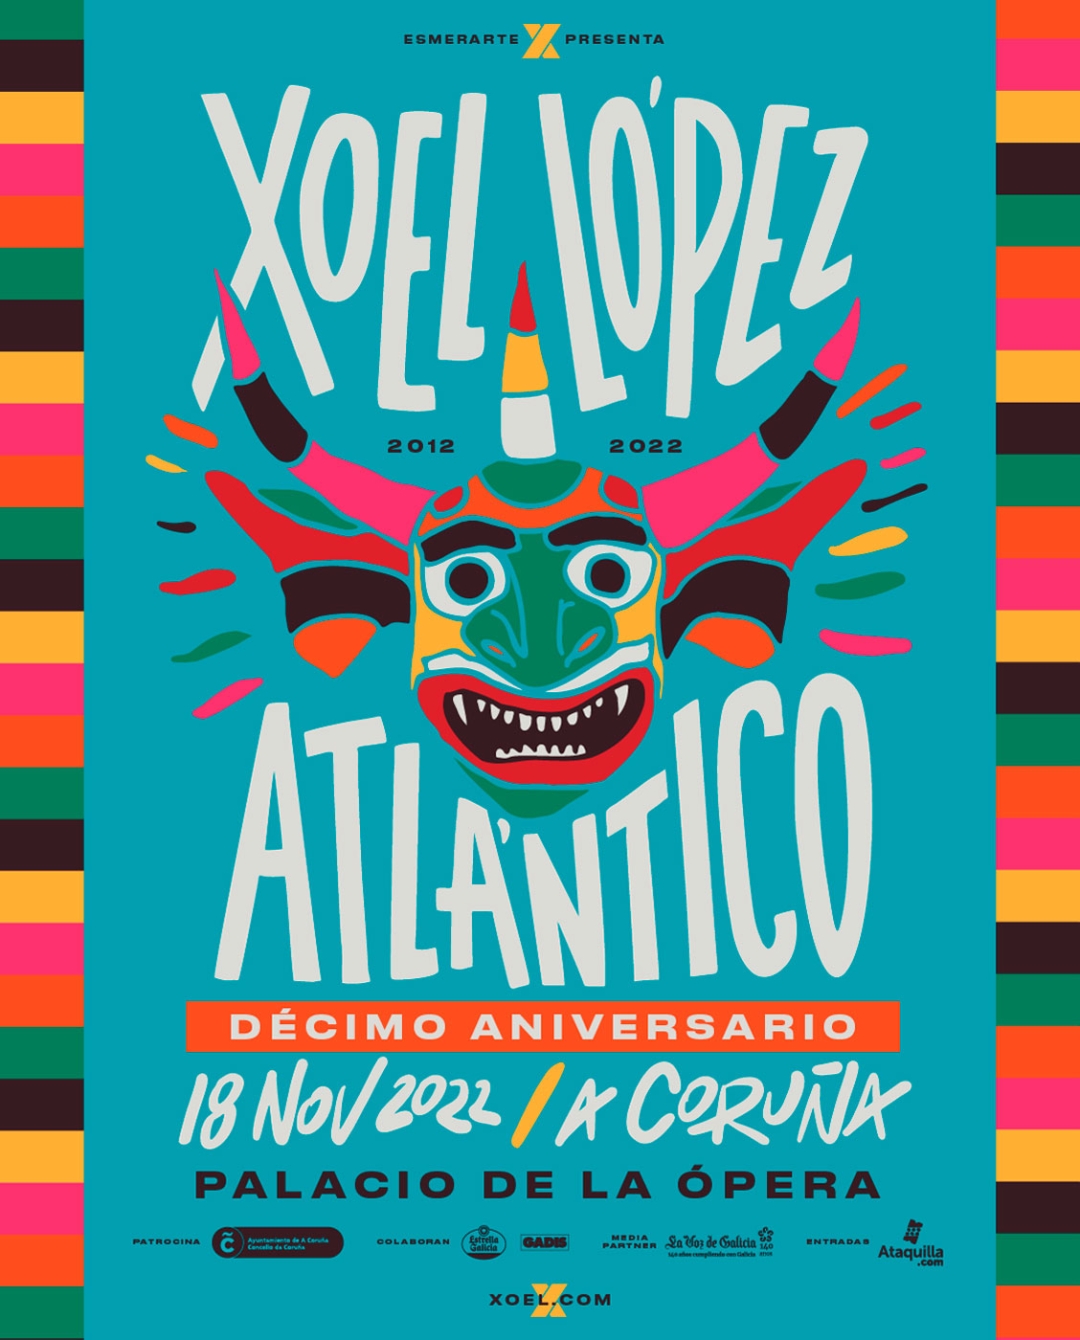 Cartel del concierto por el décimo aniversario de 'Atlántico'